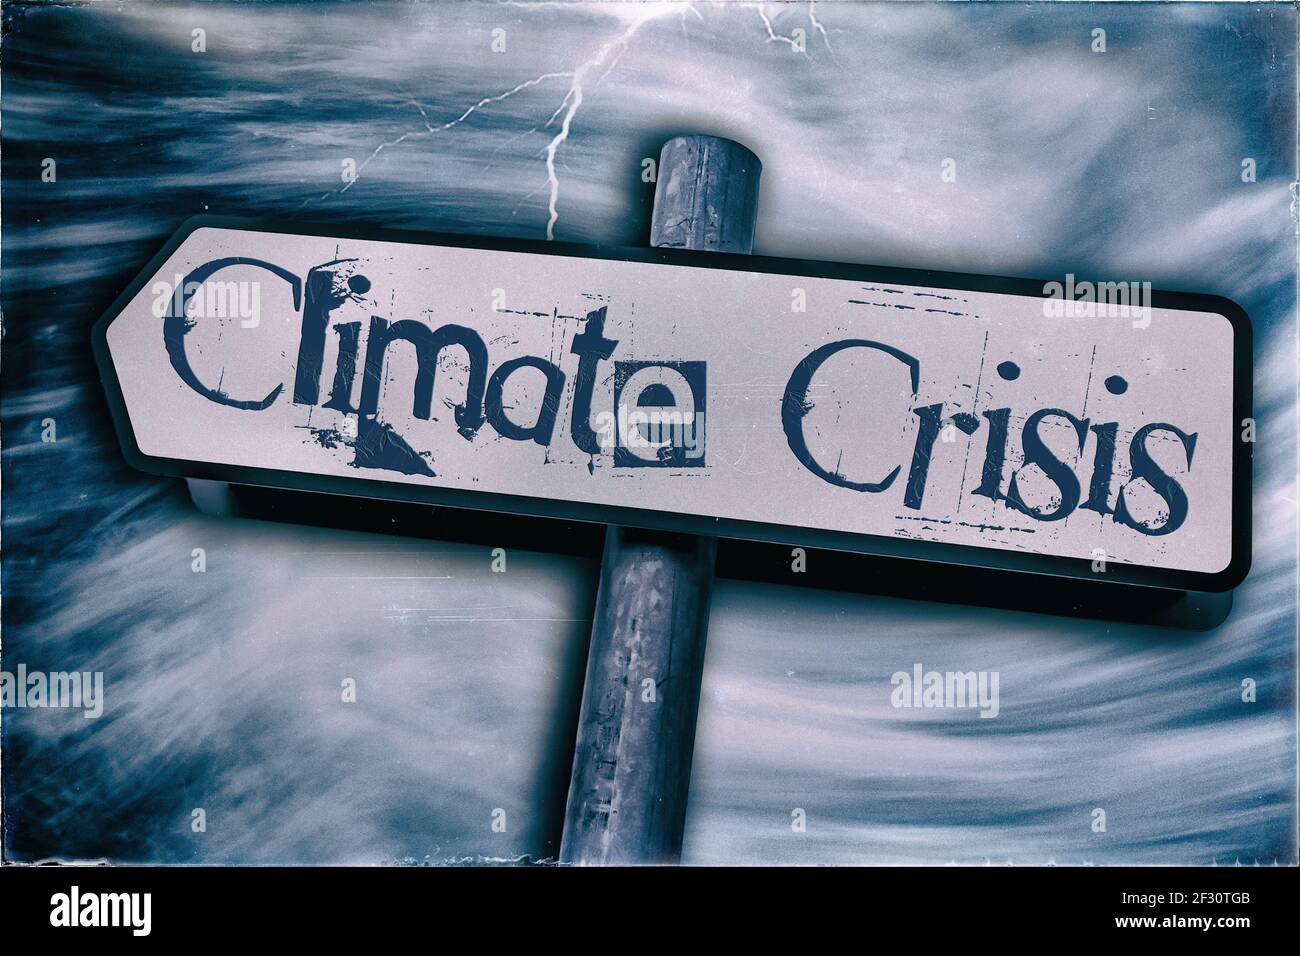 Crisi climatica visualizzata su un cartello stradale con uno sfondo attorcigliato e un fulmine che colpisce il cartello con un tono blu Foto Stock